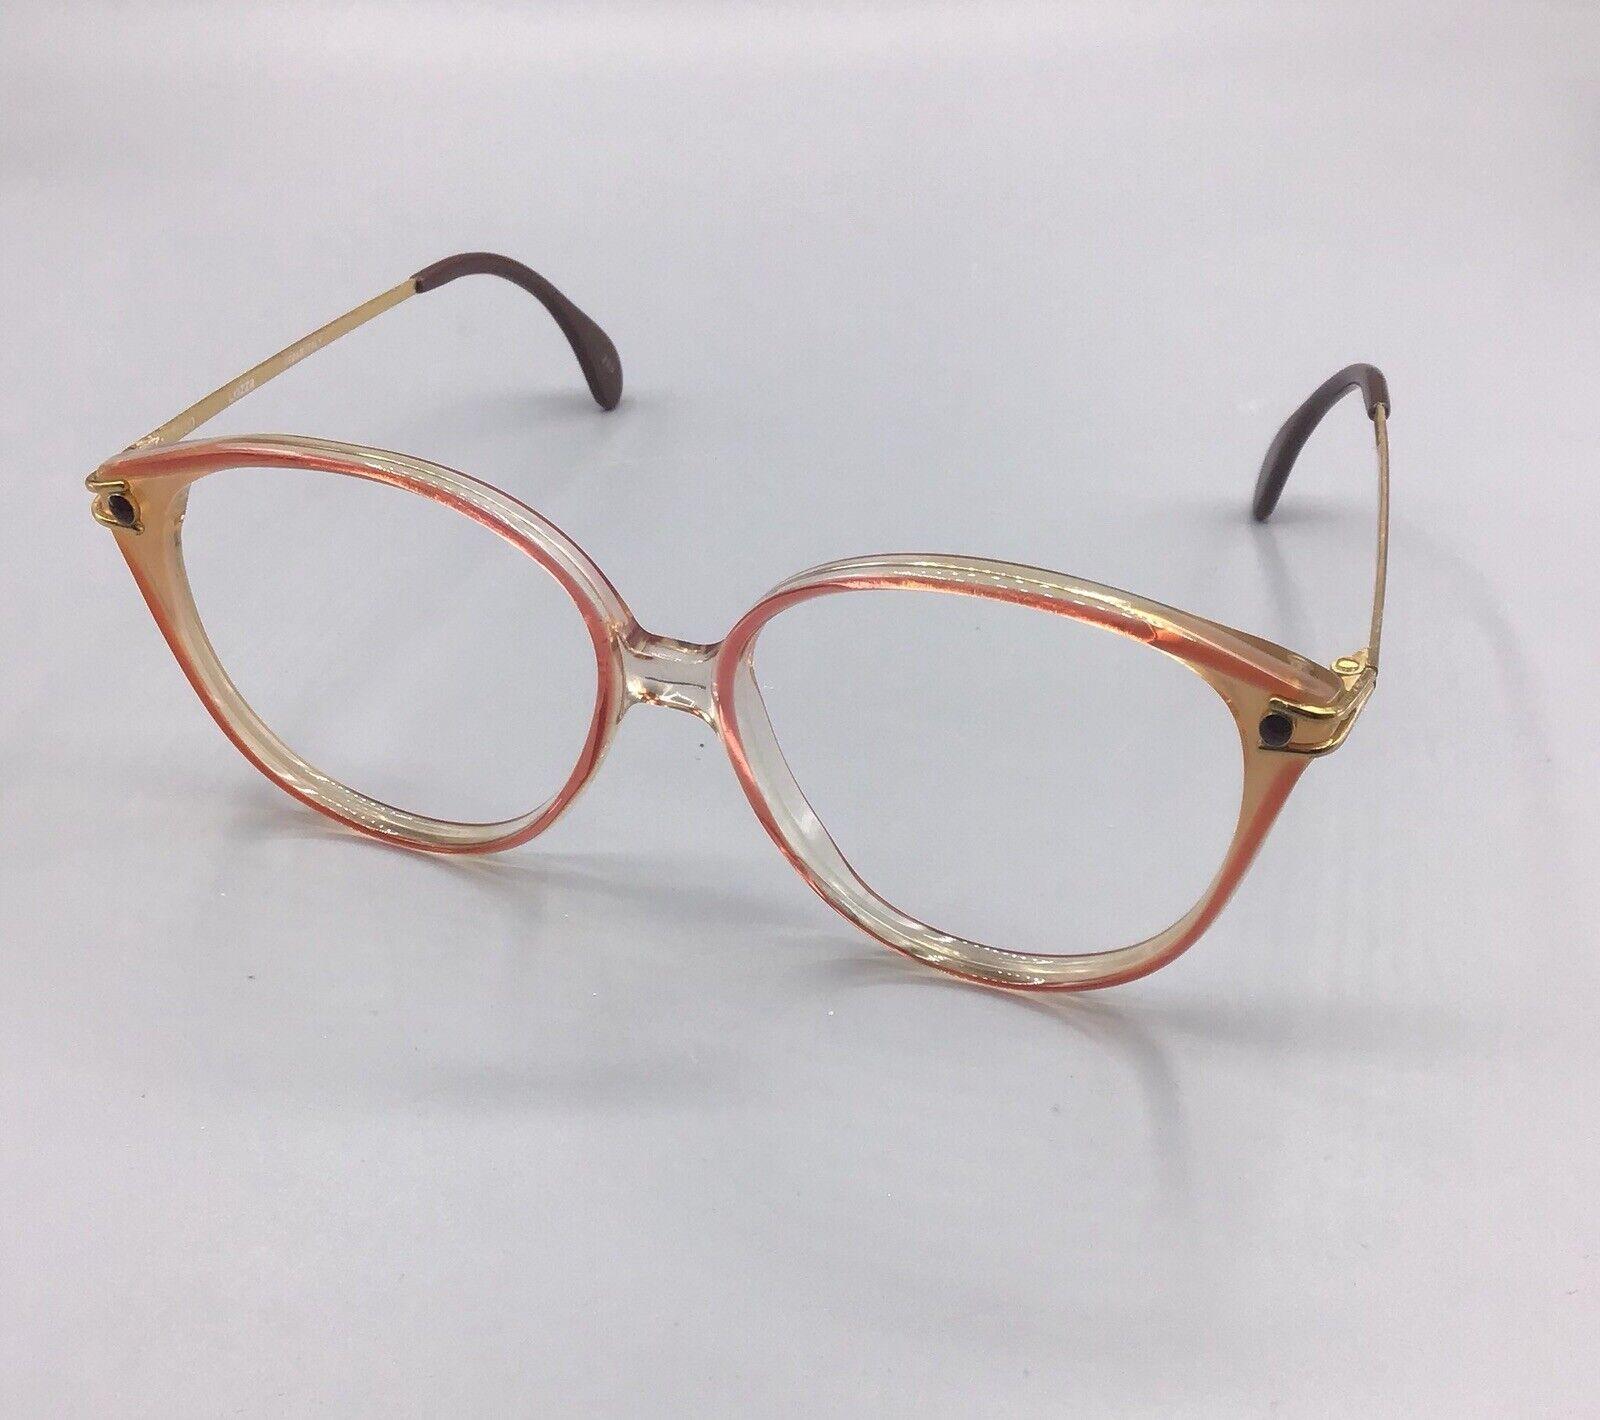 Lozza modello topazio frame Italy occhiale vintage eyewear frame brillen lunettes